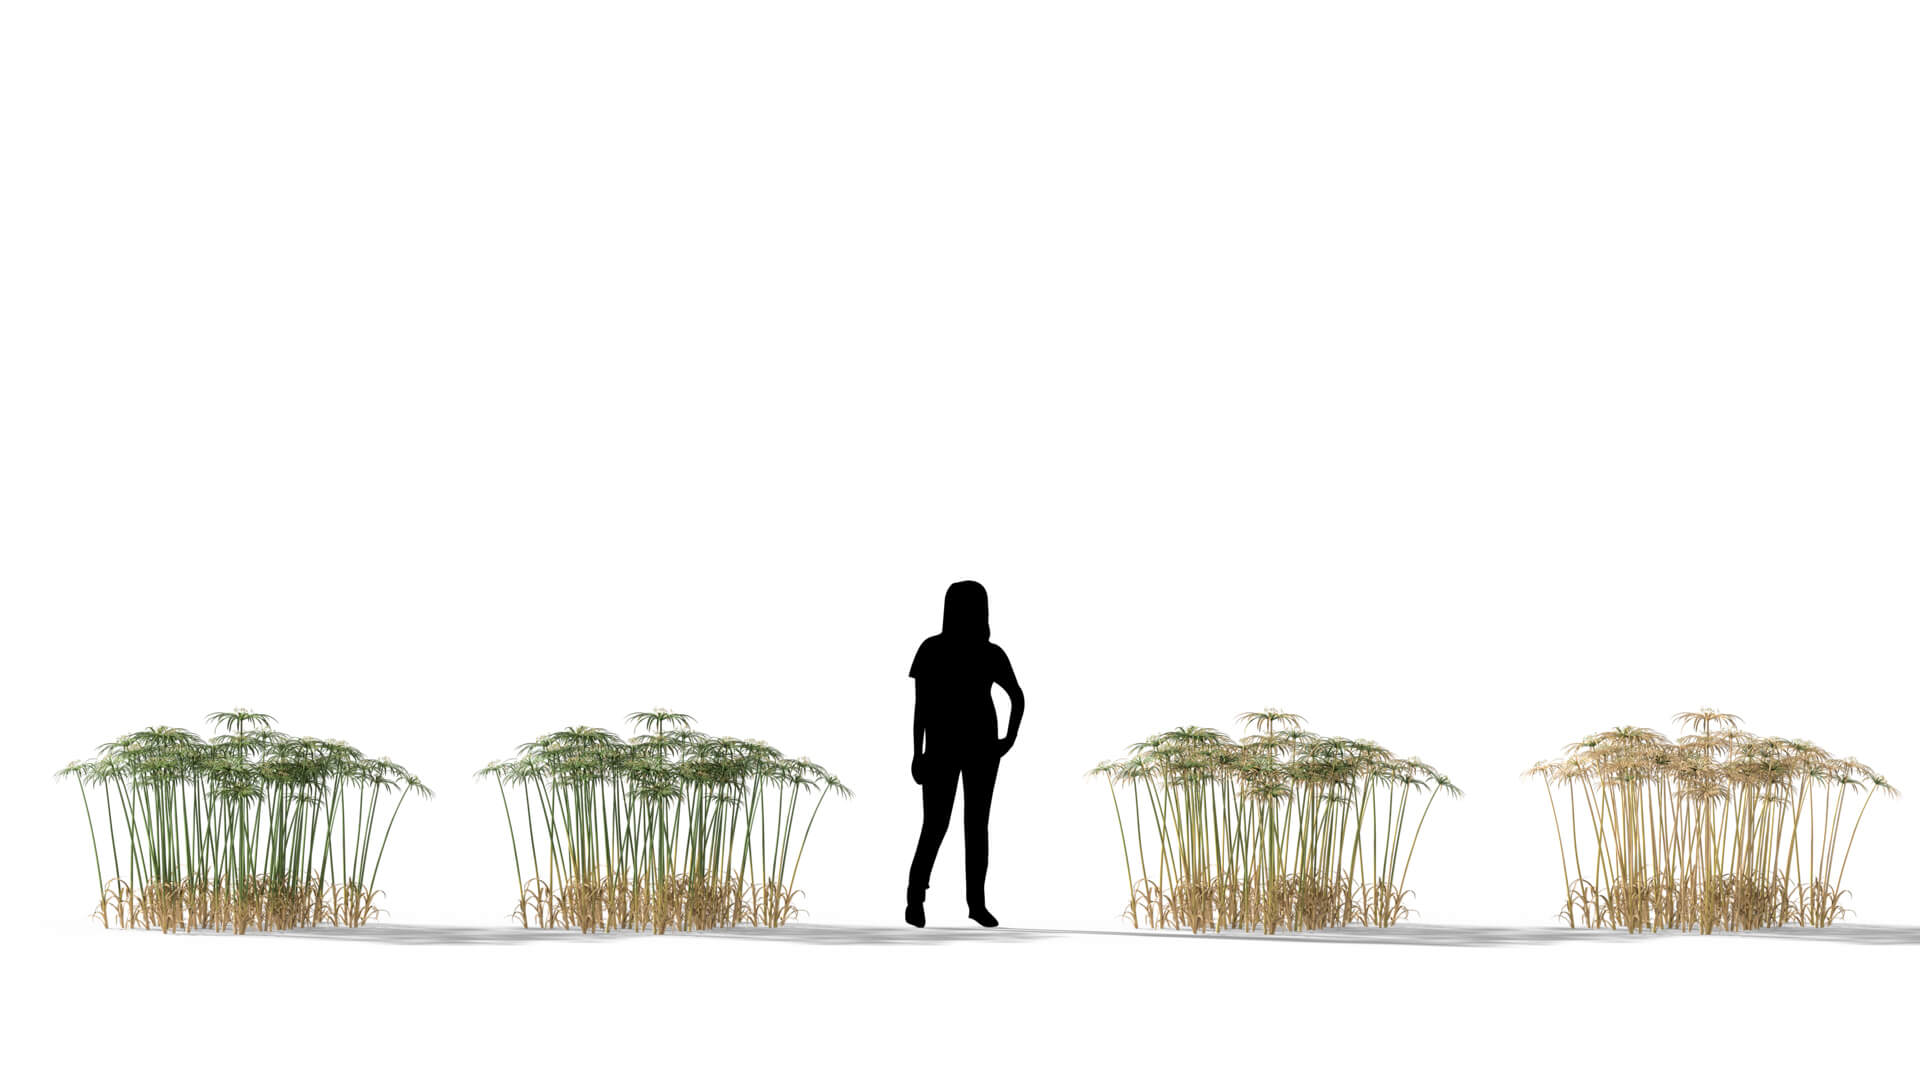 3D model of the Umbrella sedge Cyperus alternifolius health variations